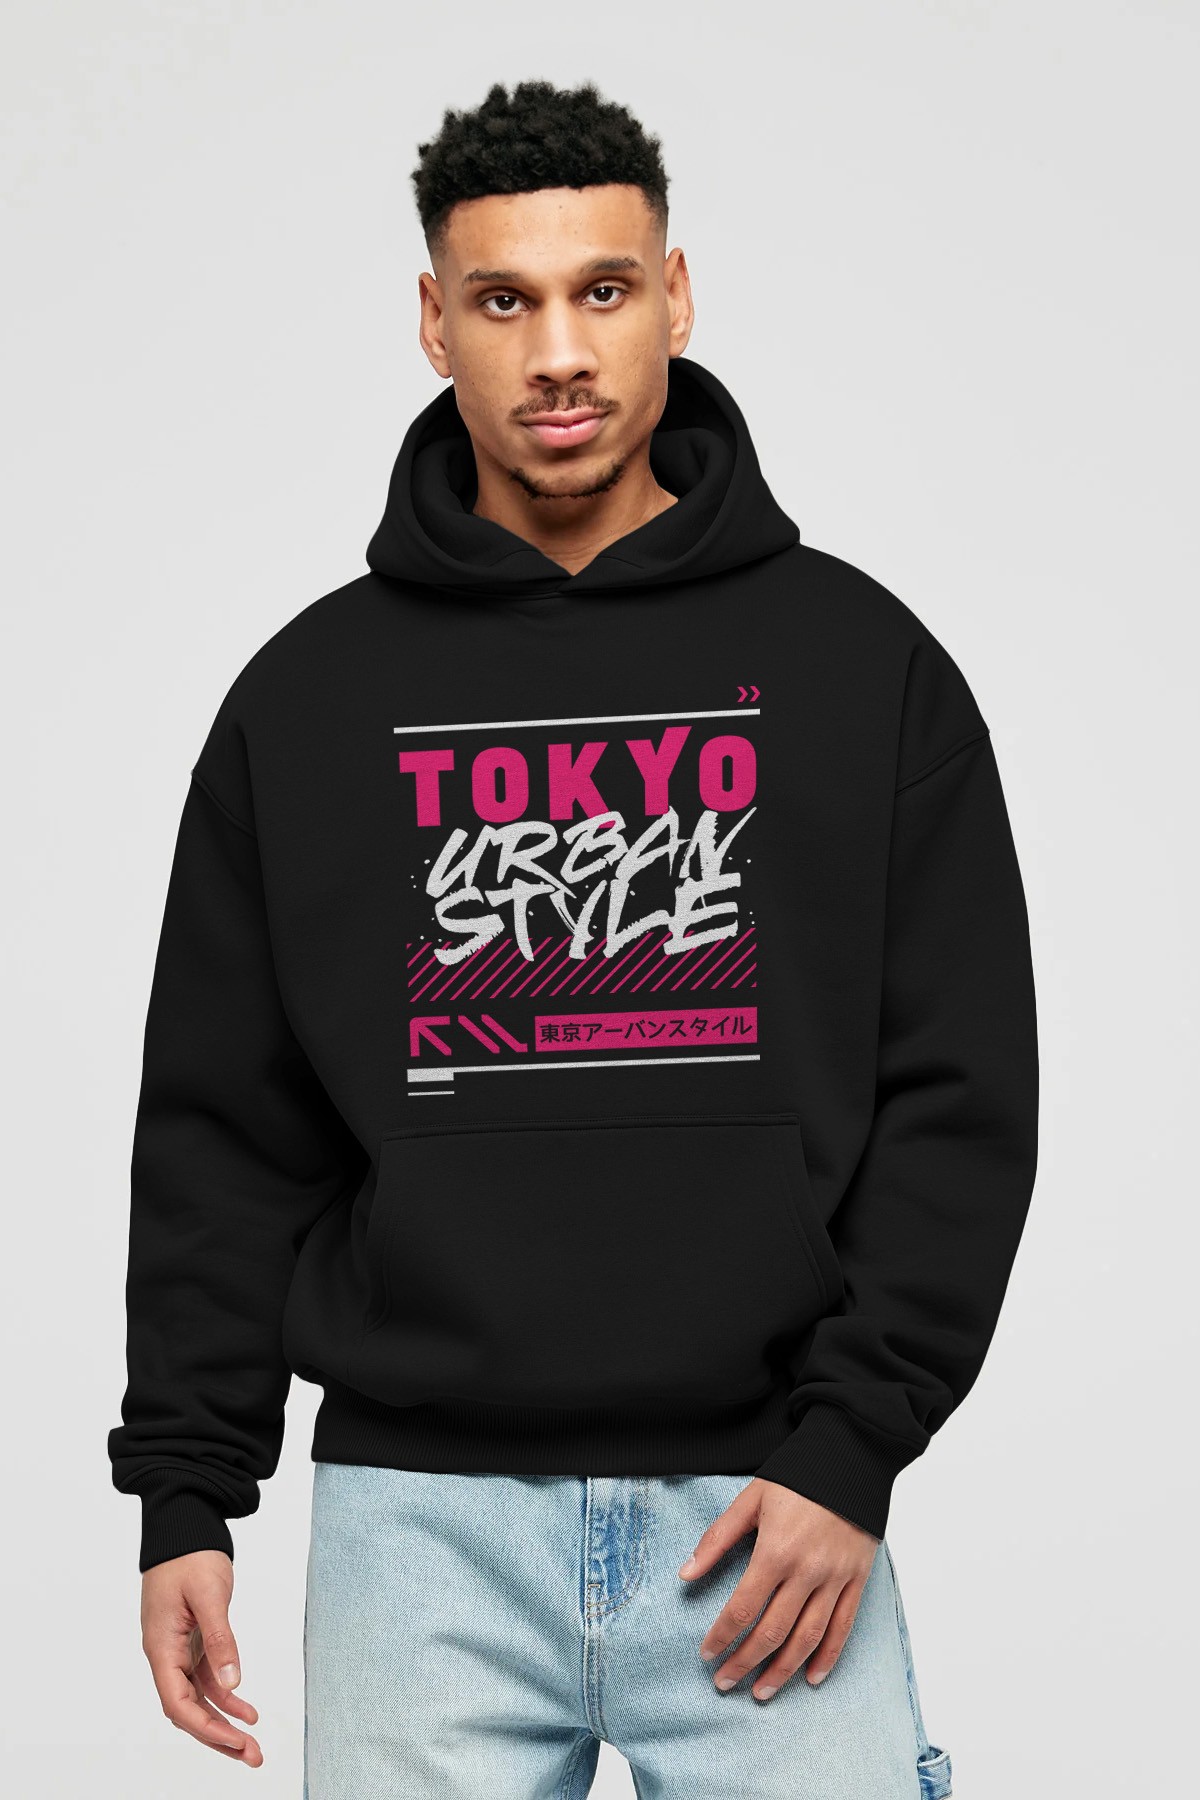 Tokyo Urban Style Ön Baskılı Hoodie Oversize Kapüşonlu Sweatshirt Erkek Kadın Unisex